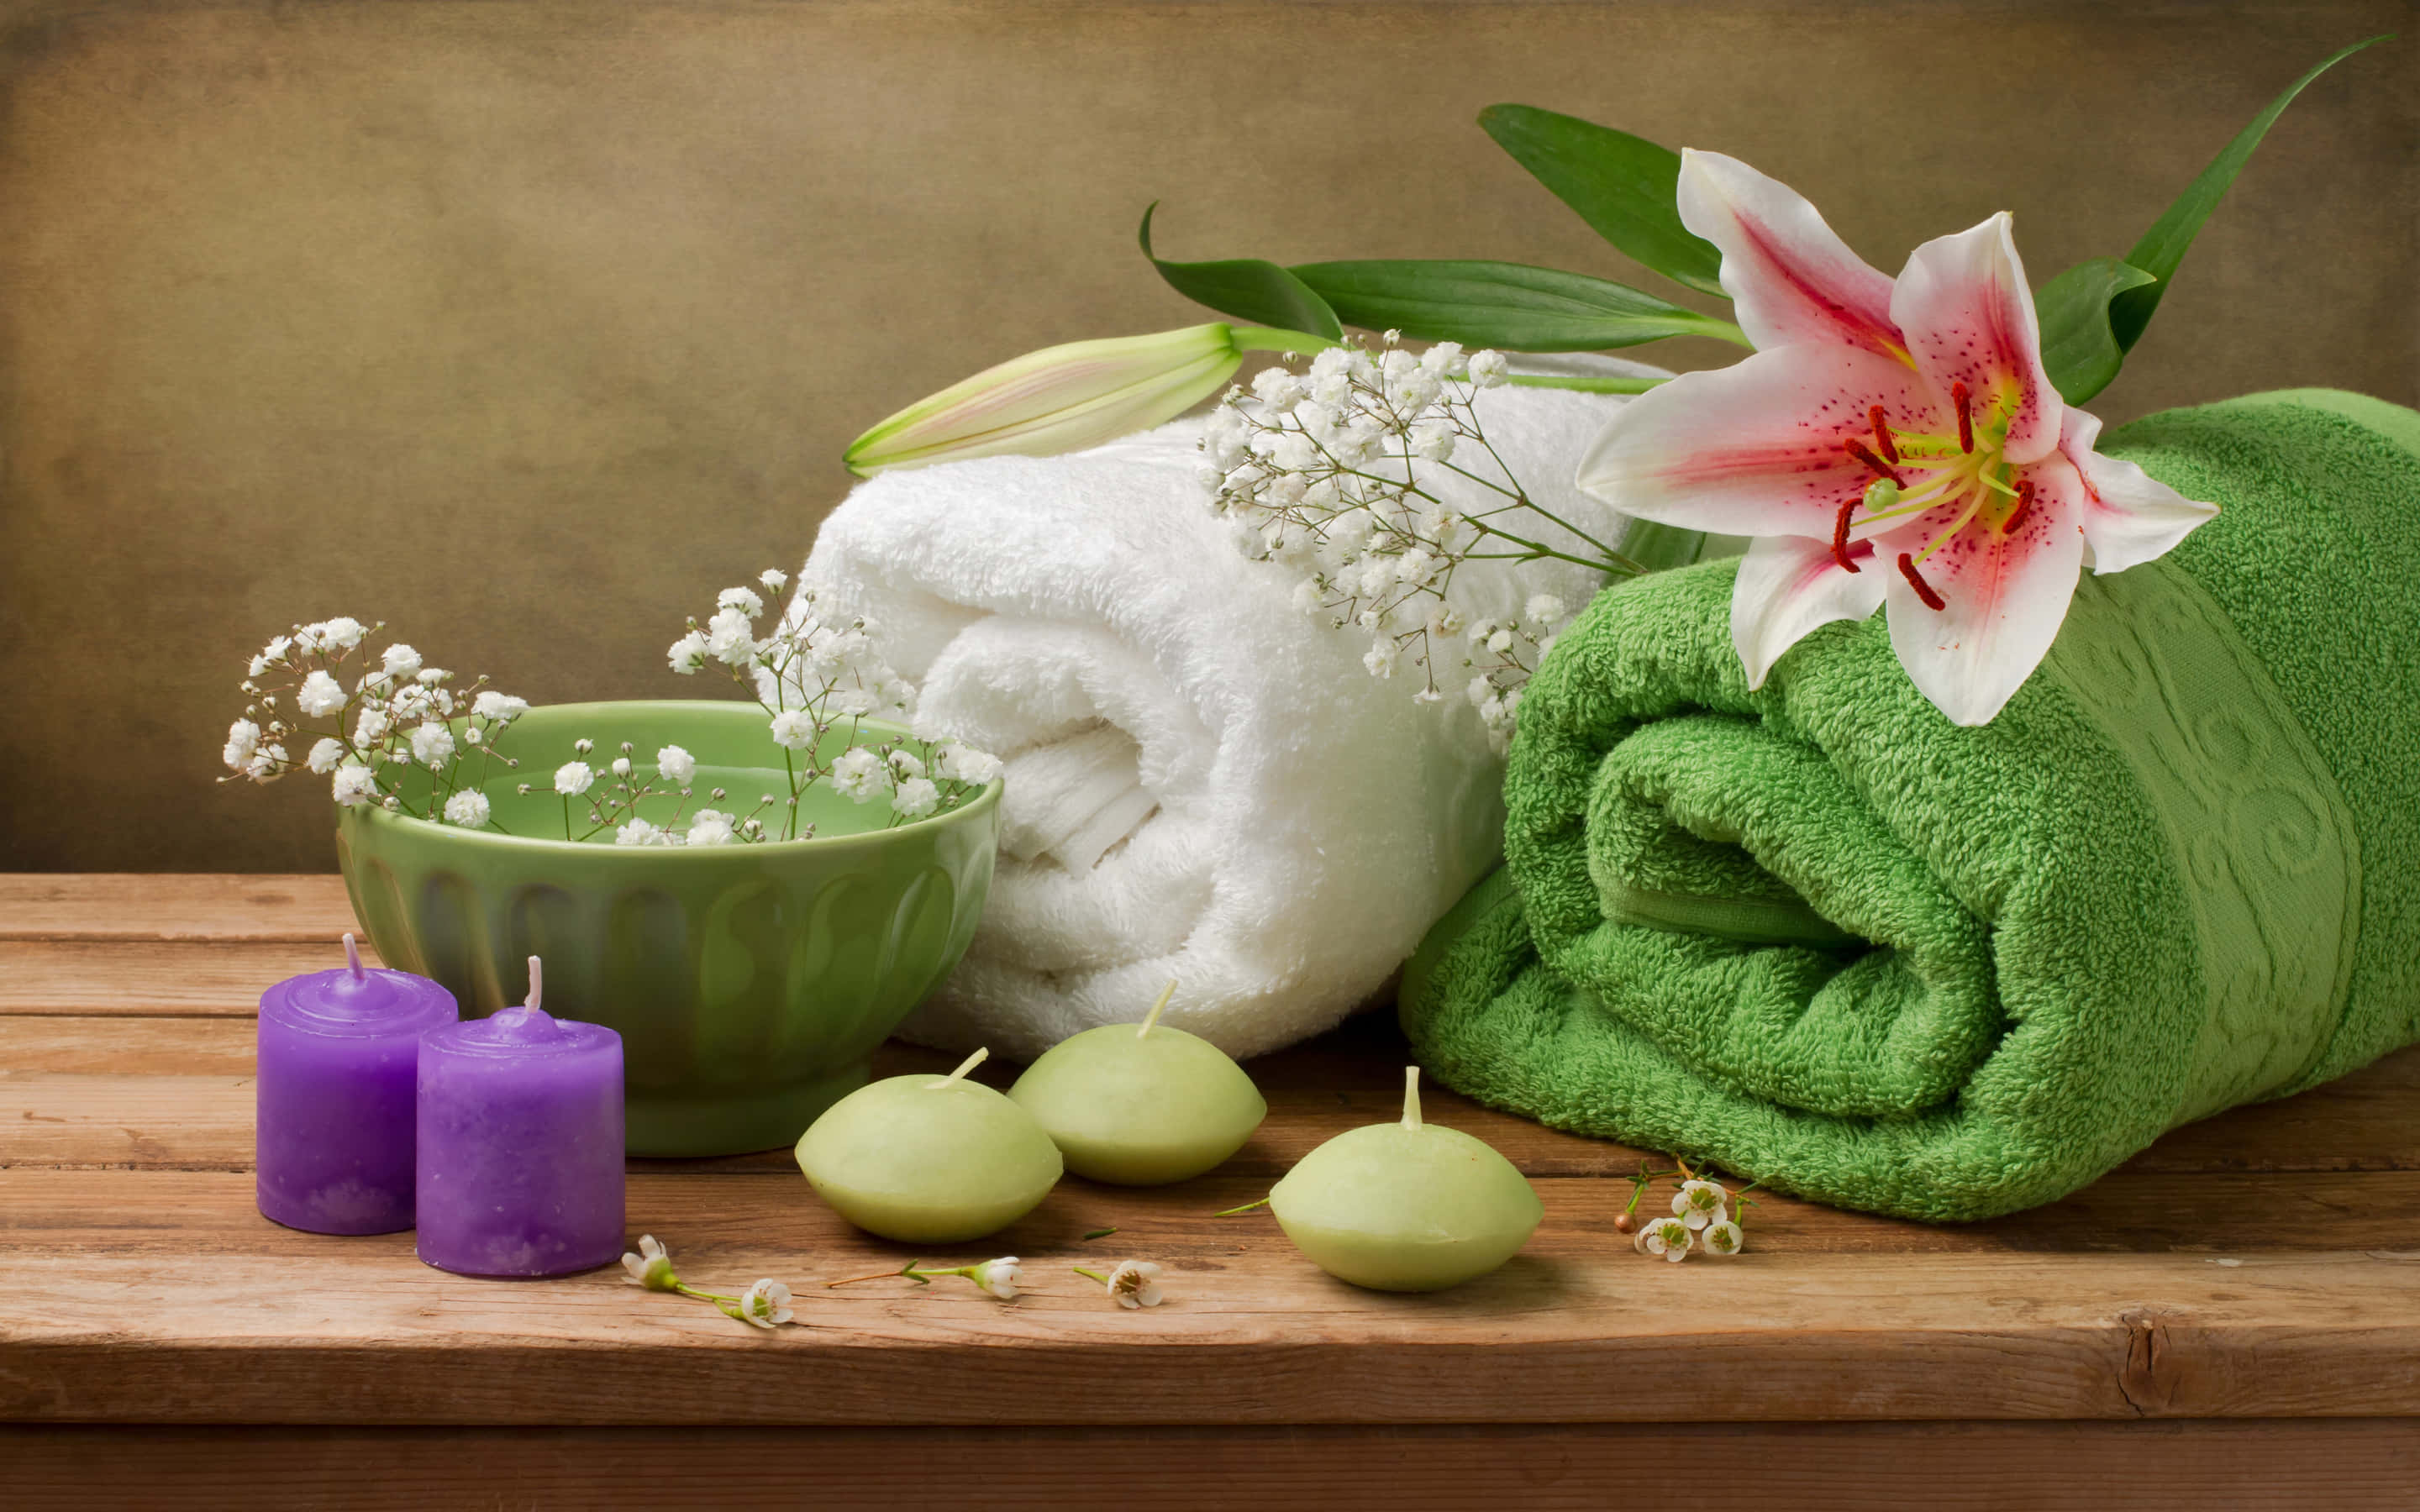 Hintergrundbildmit Wellness-atmosphäre: Weiße Und Grüne Handtücher Mit Lila Und Grünen Kerzen